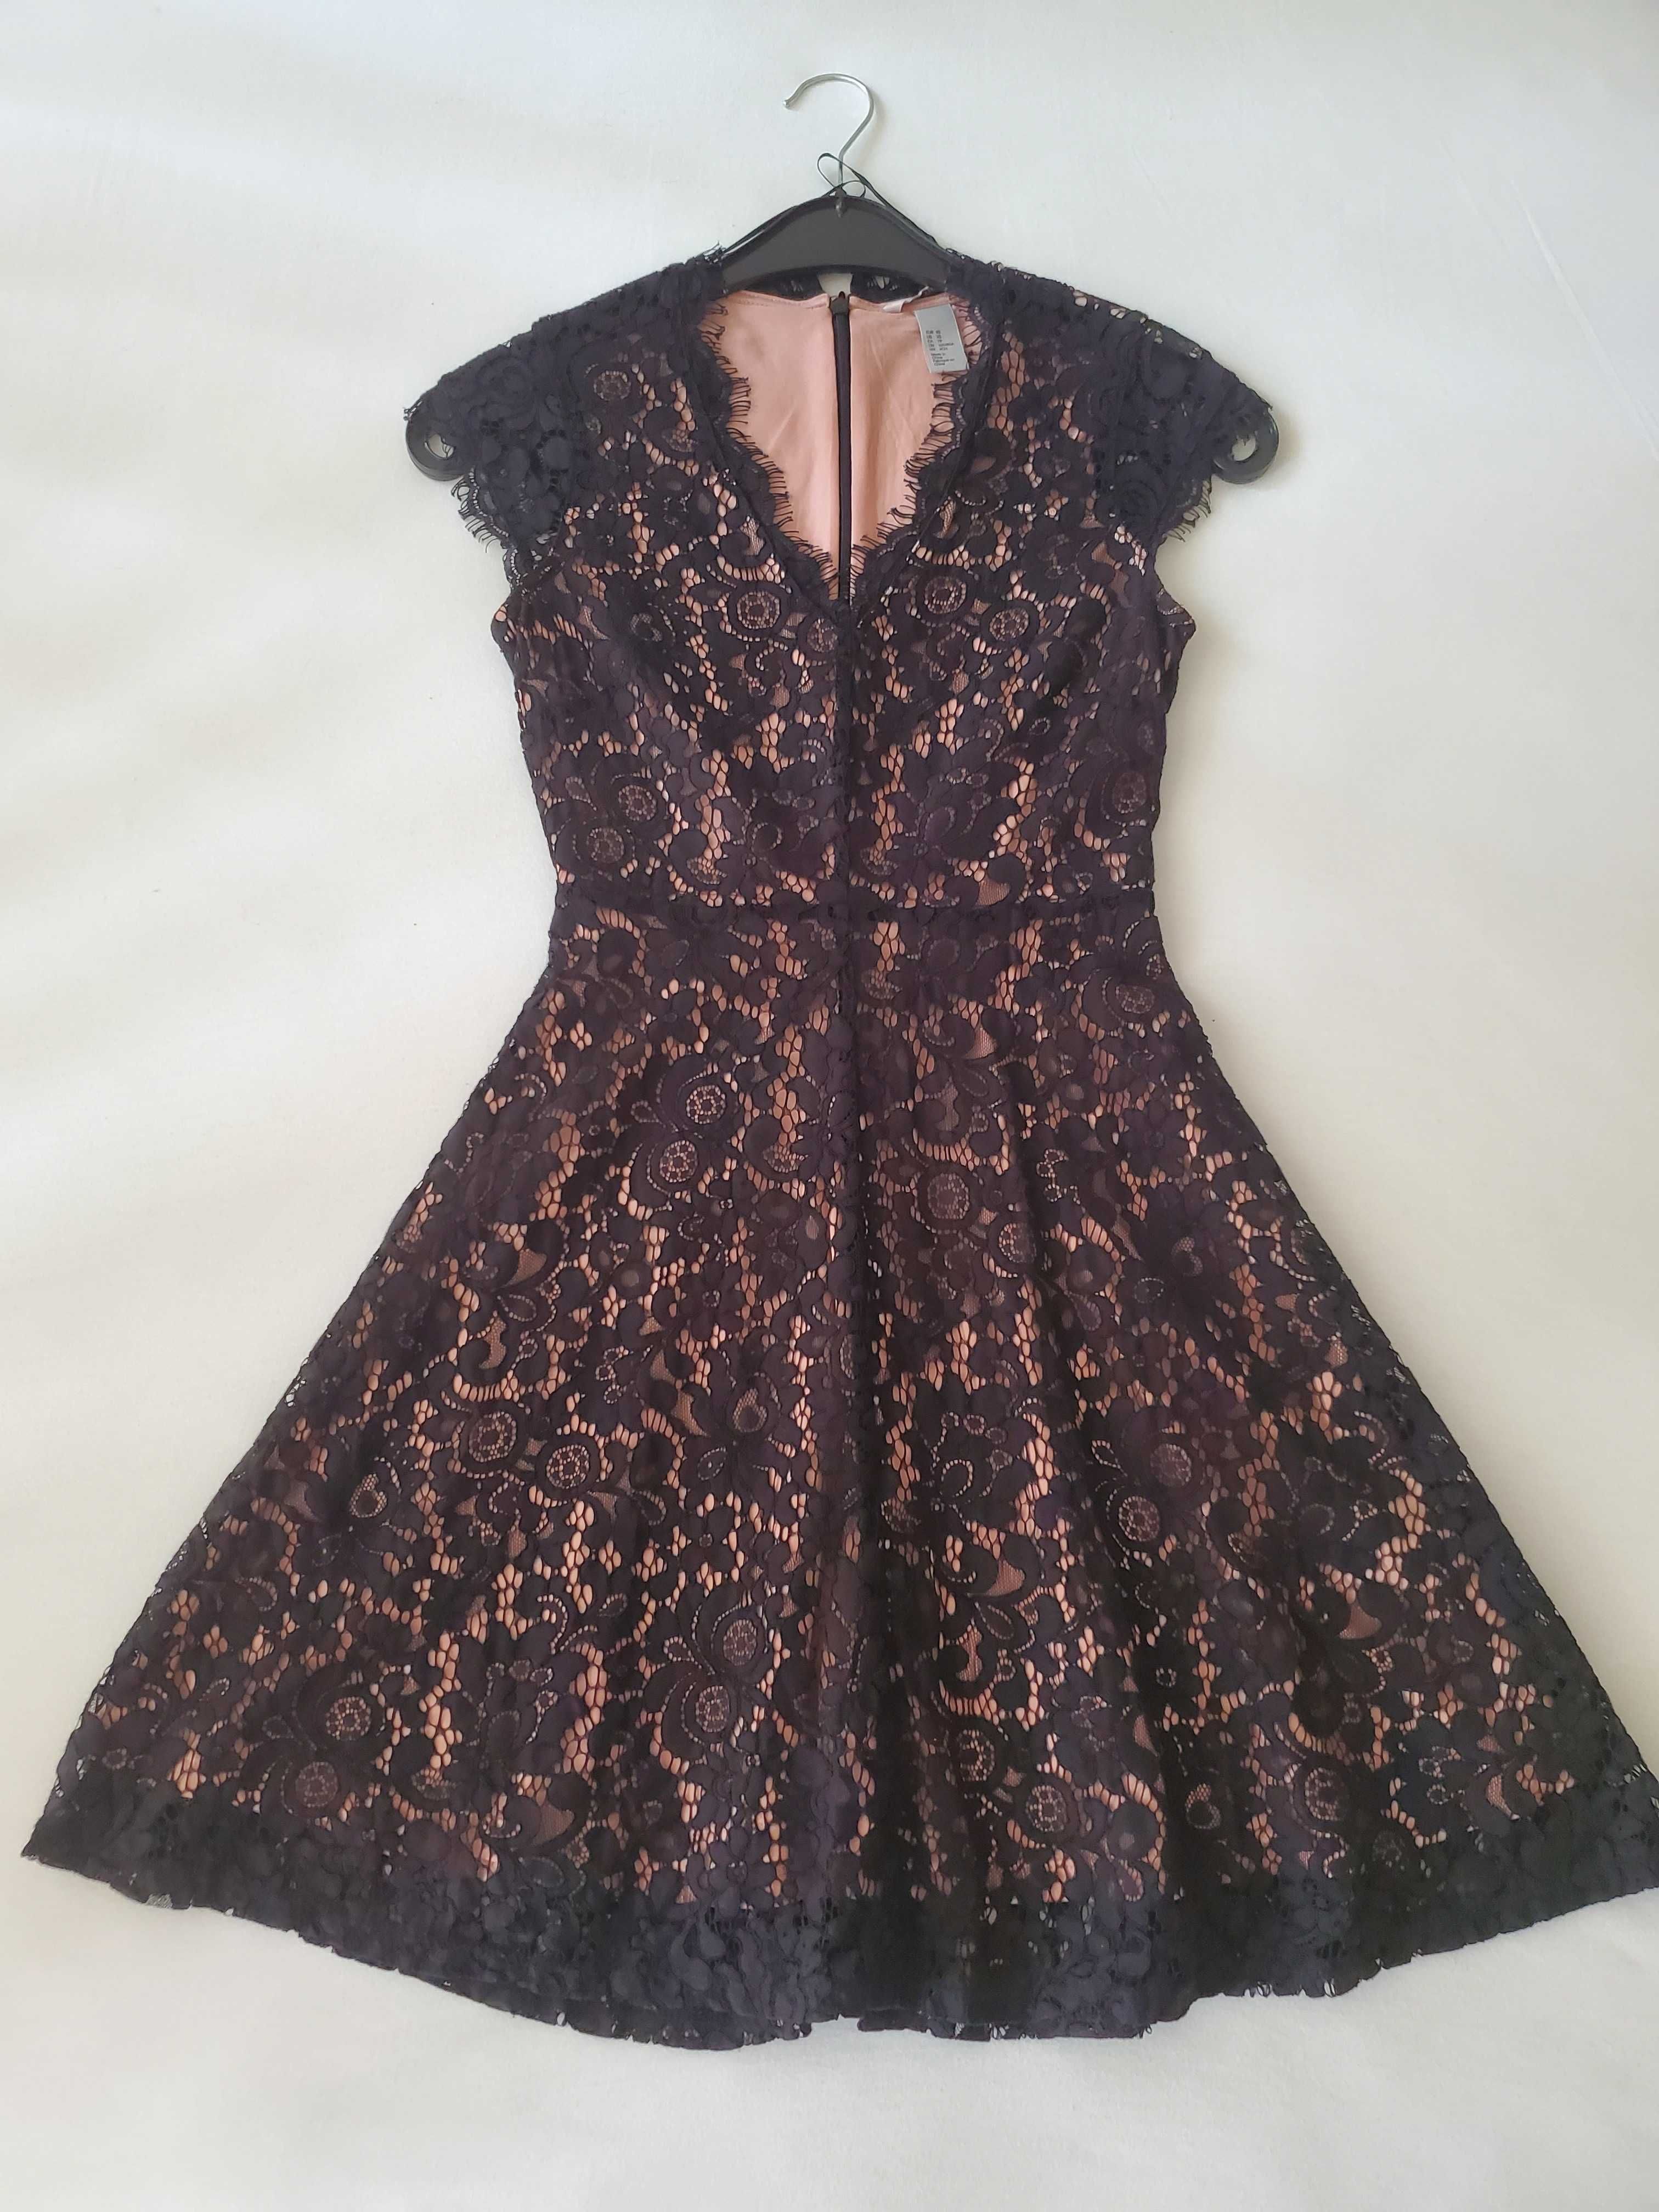 Официална рокля в лилаво с черна дантела размер XS - нова - 45 лв